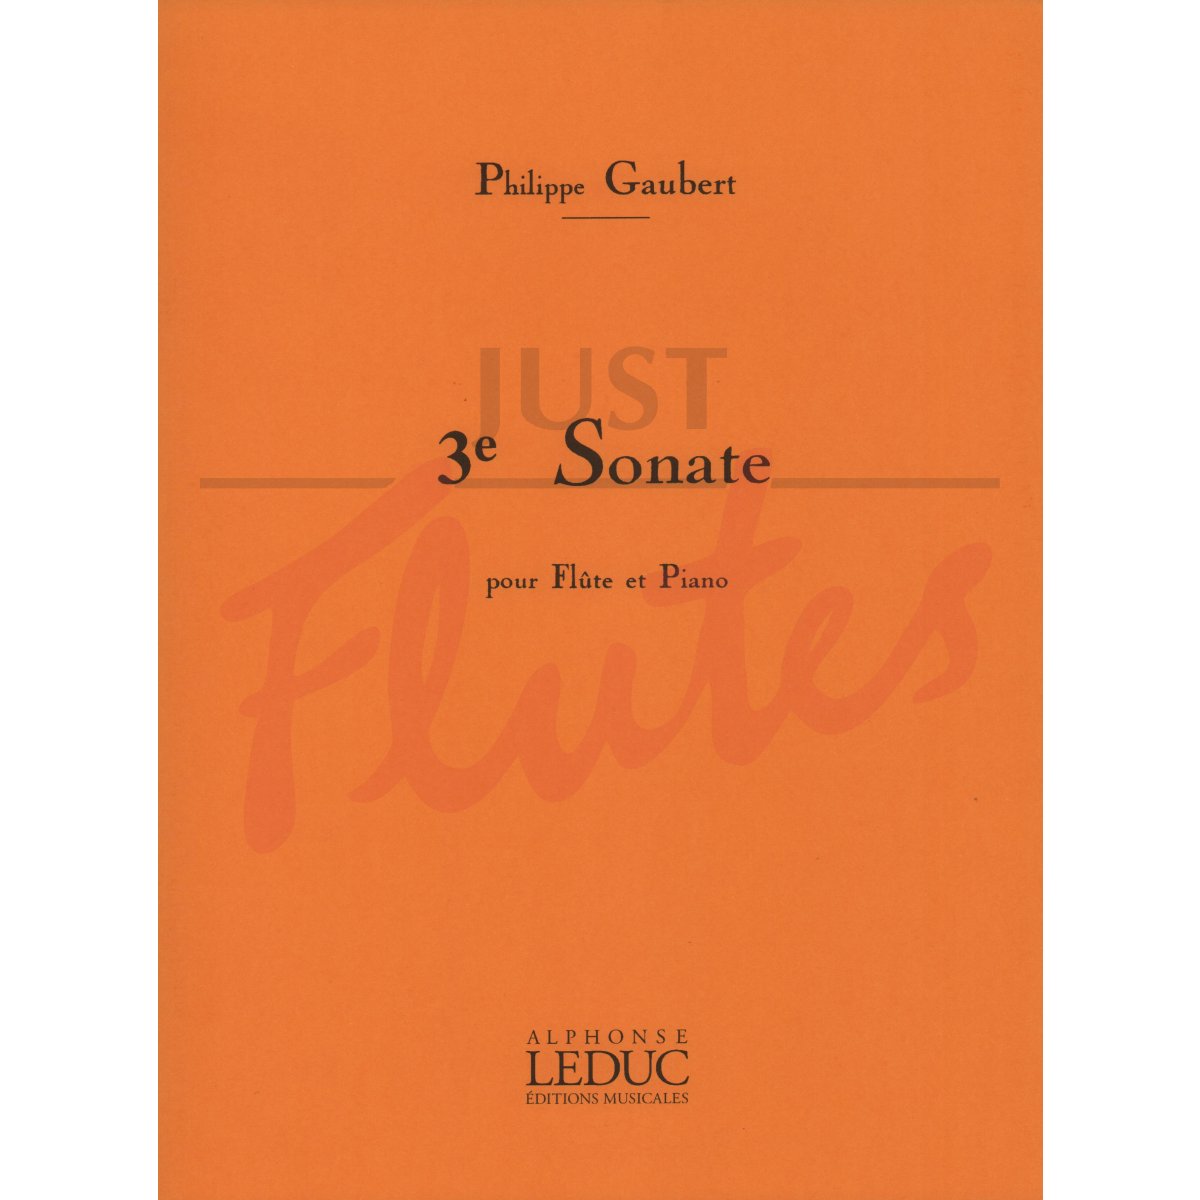 Sonata No 3 for Flute and Piano